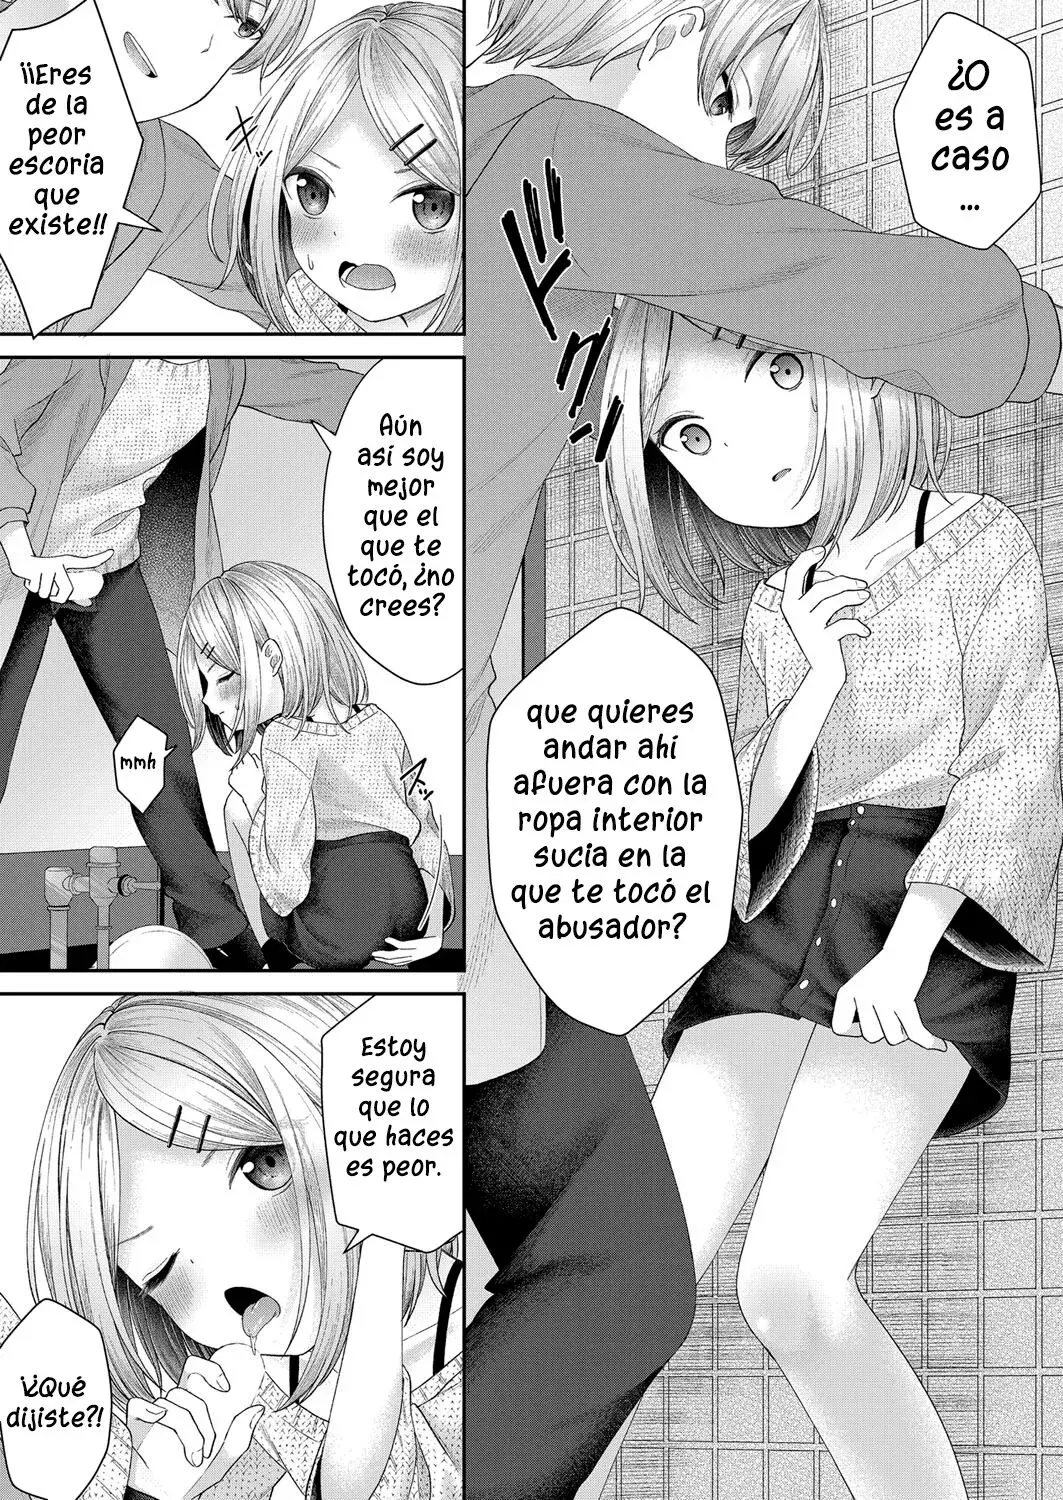 Leer manga hentai hermana pequeña follada en baños públicos del artista Shimada Panda. Encuentra doujins incesto en español gratis en la web que recopila todo el comic toon porno nipón de la red.